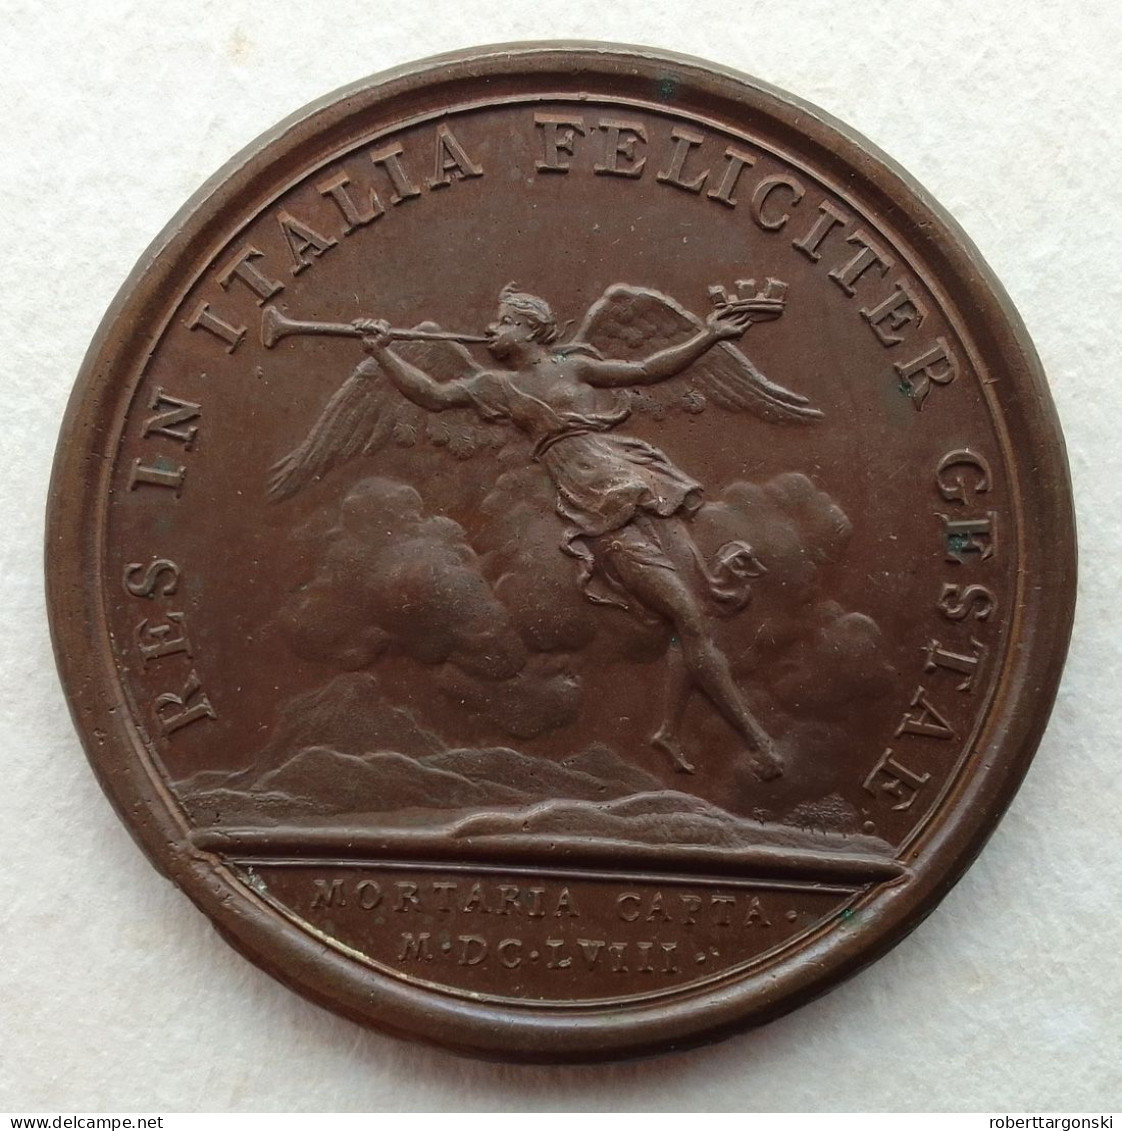 Medaille - France - Louis XIV - Mauger - 1658 - Monarchia / Nobiltà